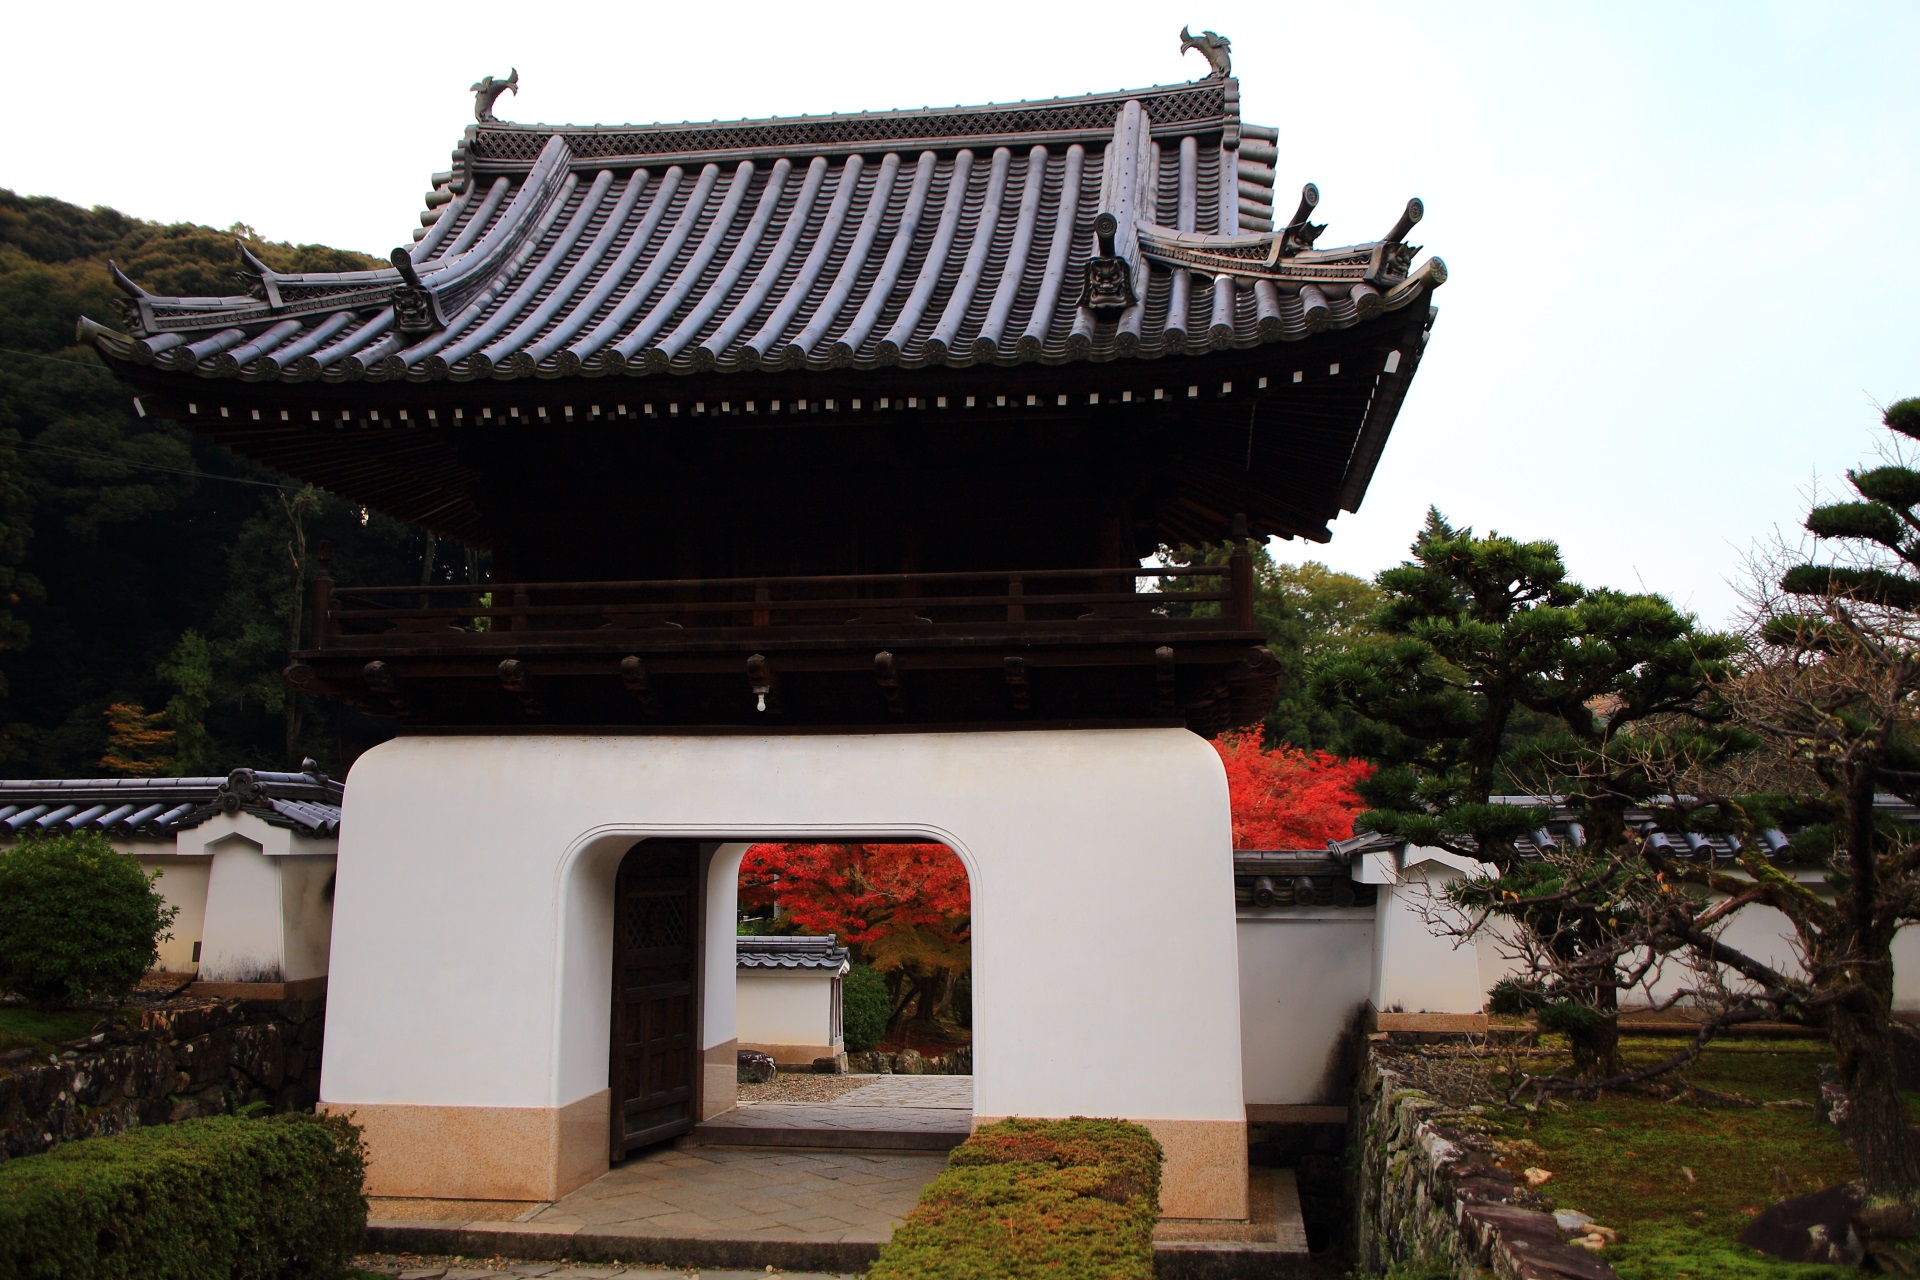 興聖寺の独特の龍宮門と琴坂の鮮やかな紅葉